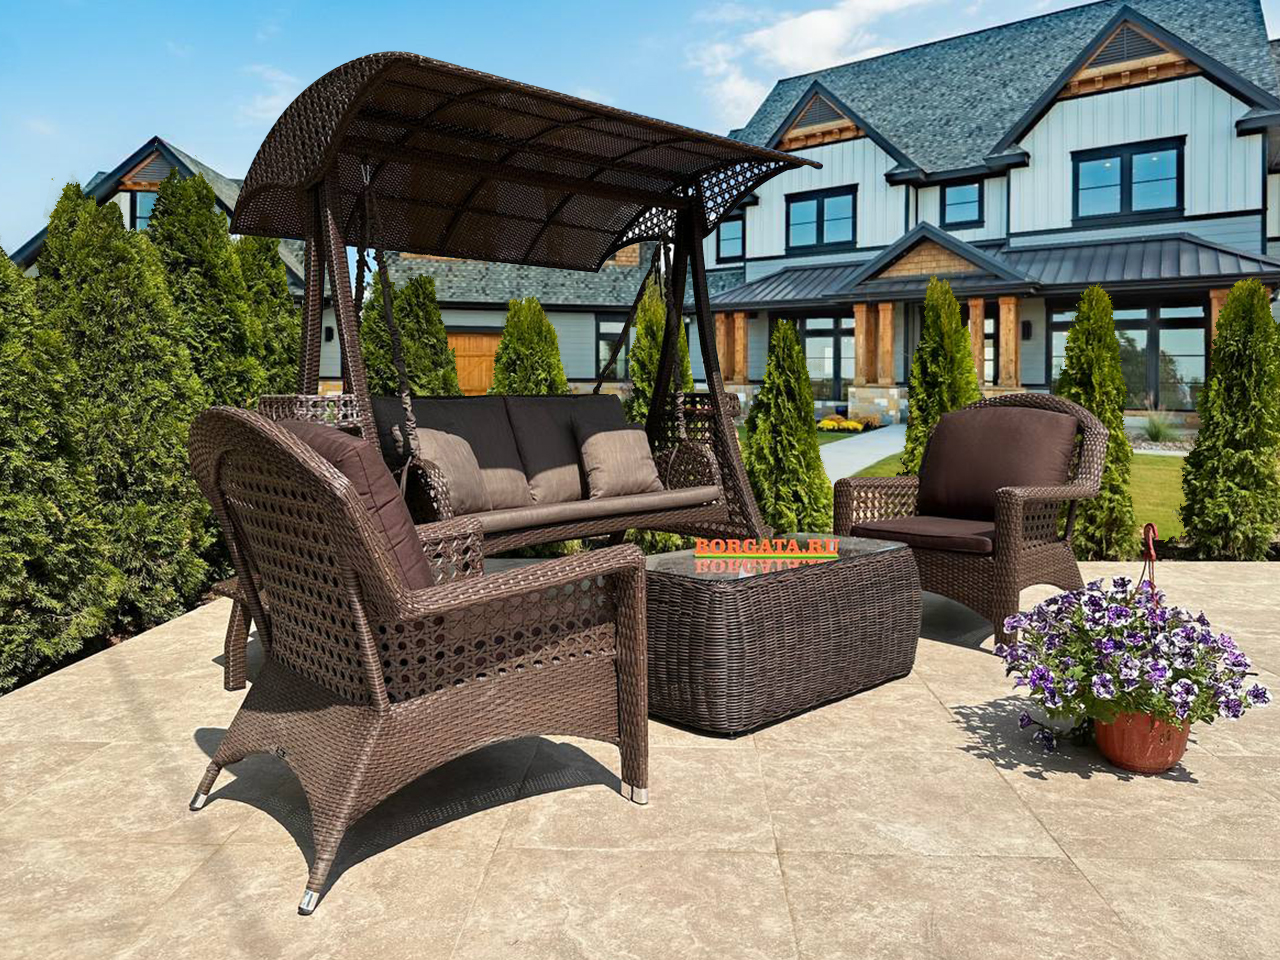 Лаунж зона с качелями 2-х и креслами для отдыха VICTORIA brown для сада или патио в загородном особняке